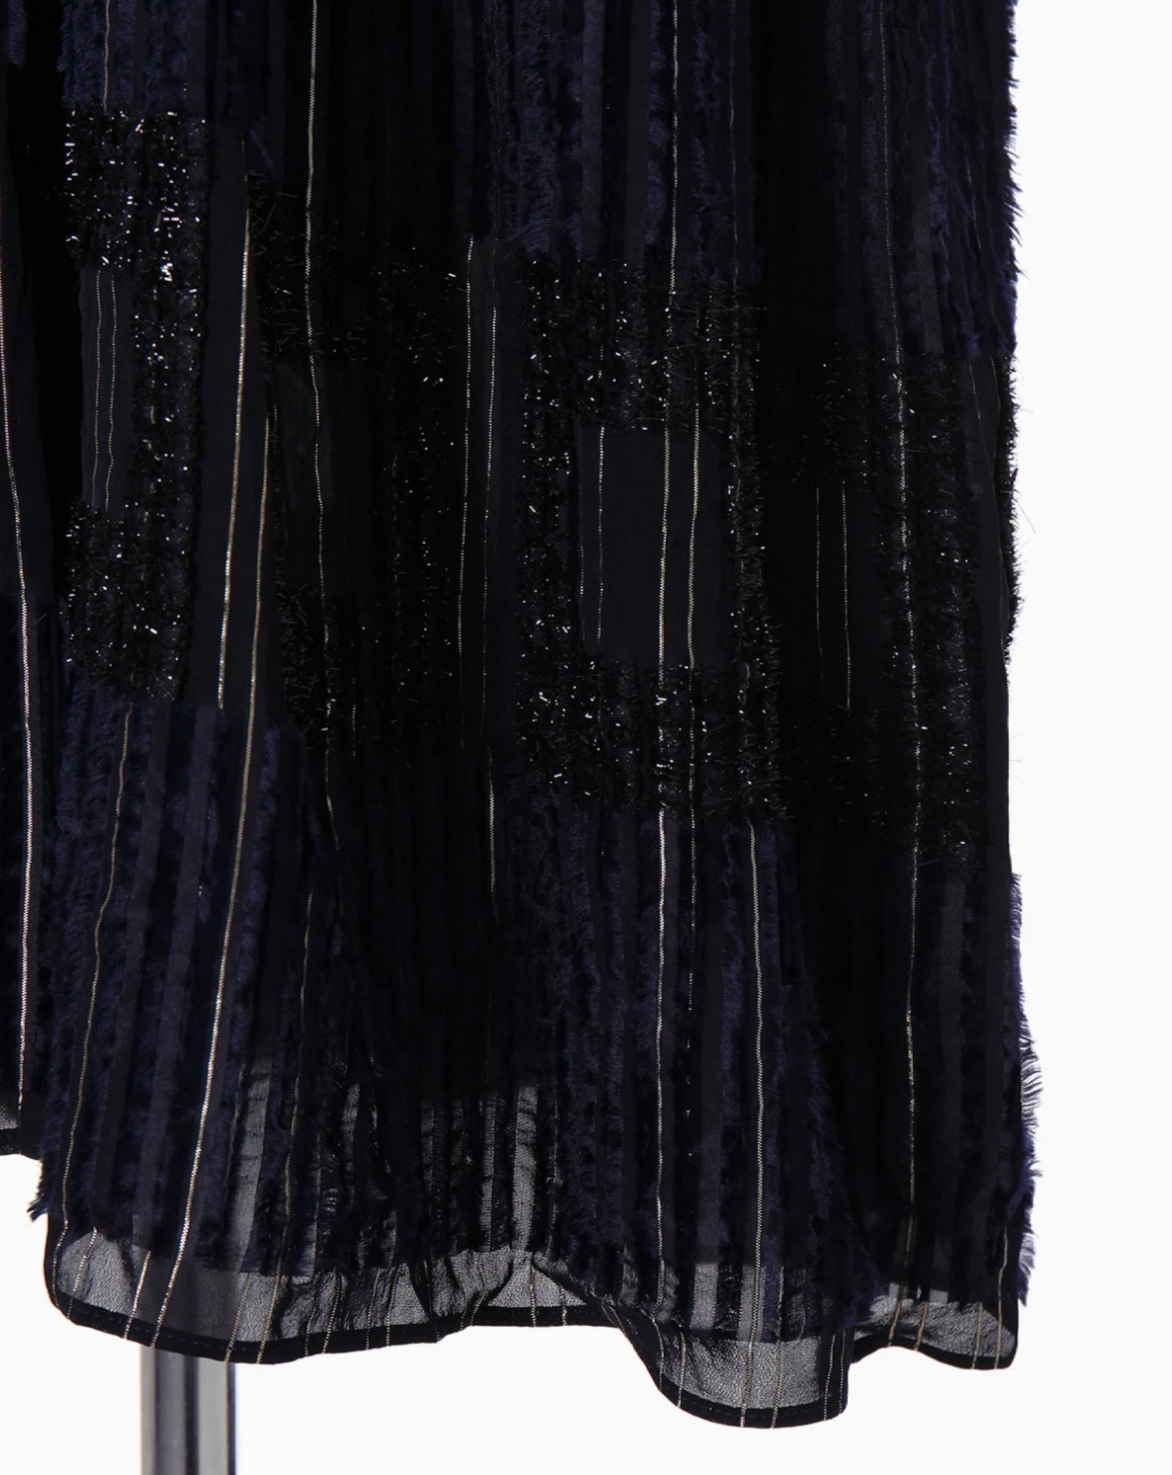 DONNA Les Boutiques - Dress shirring black/blue